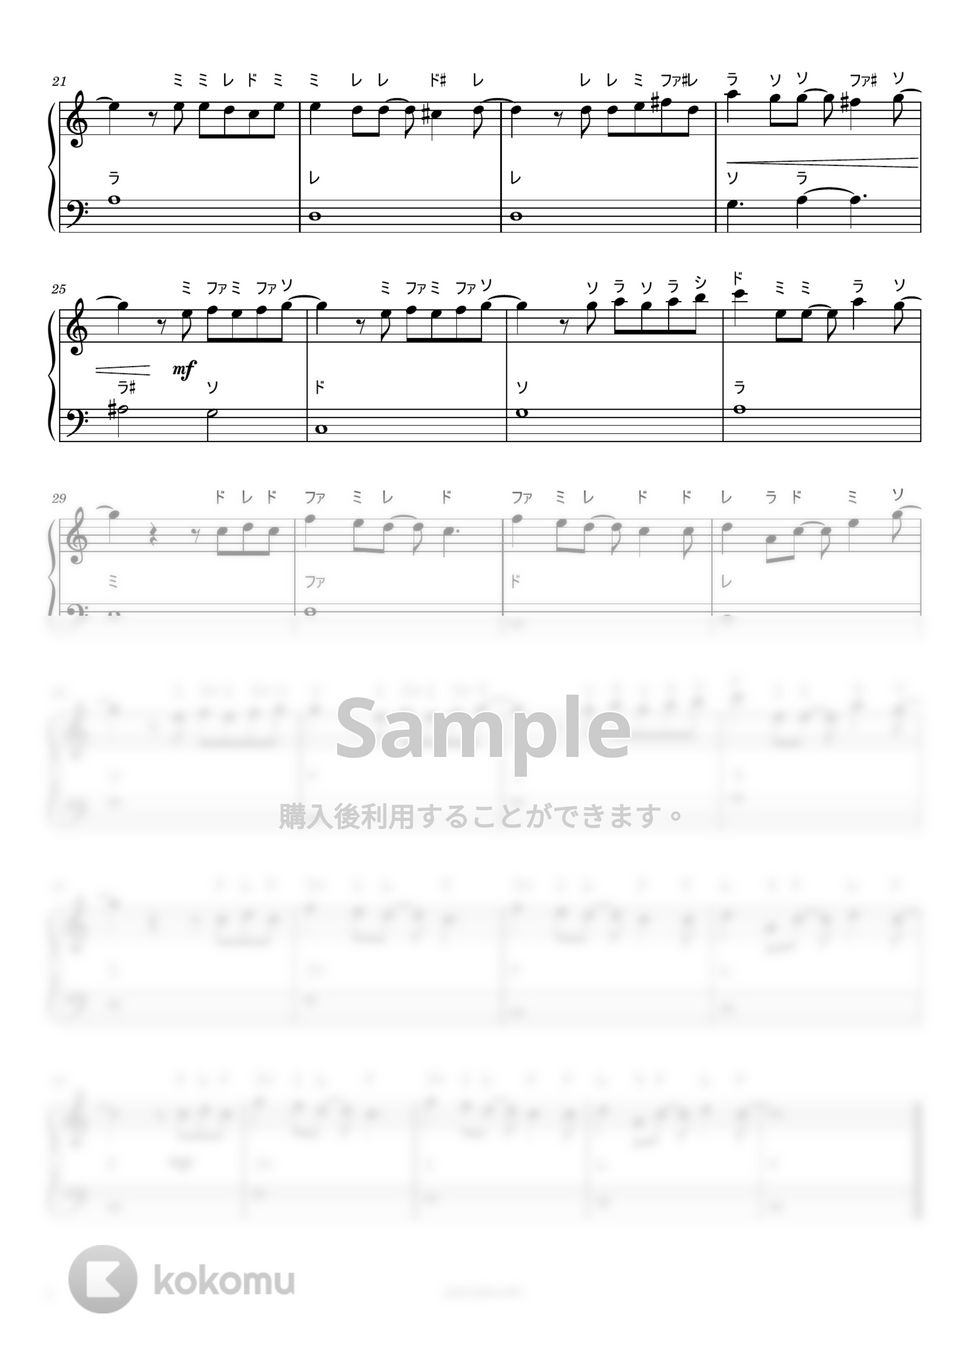 つじあやの - 風になる (ドレミ付き簡単楽譜) by ピアノ塾